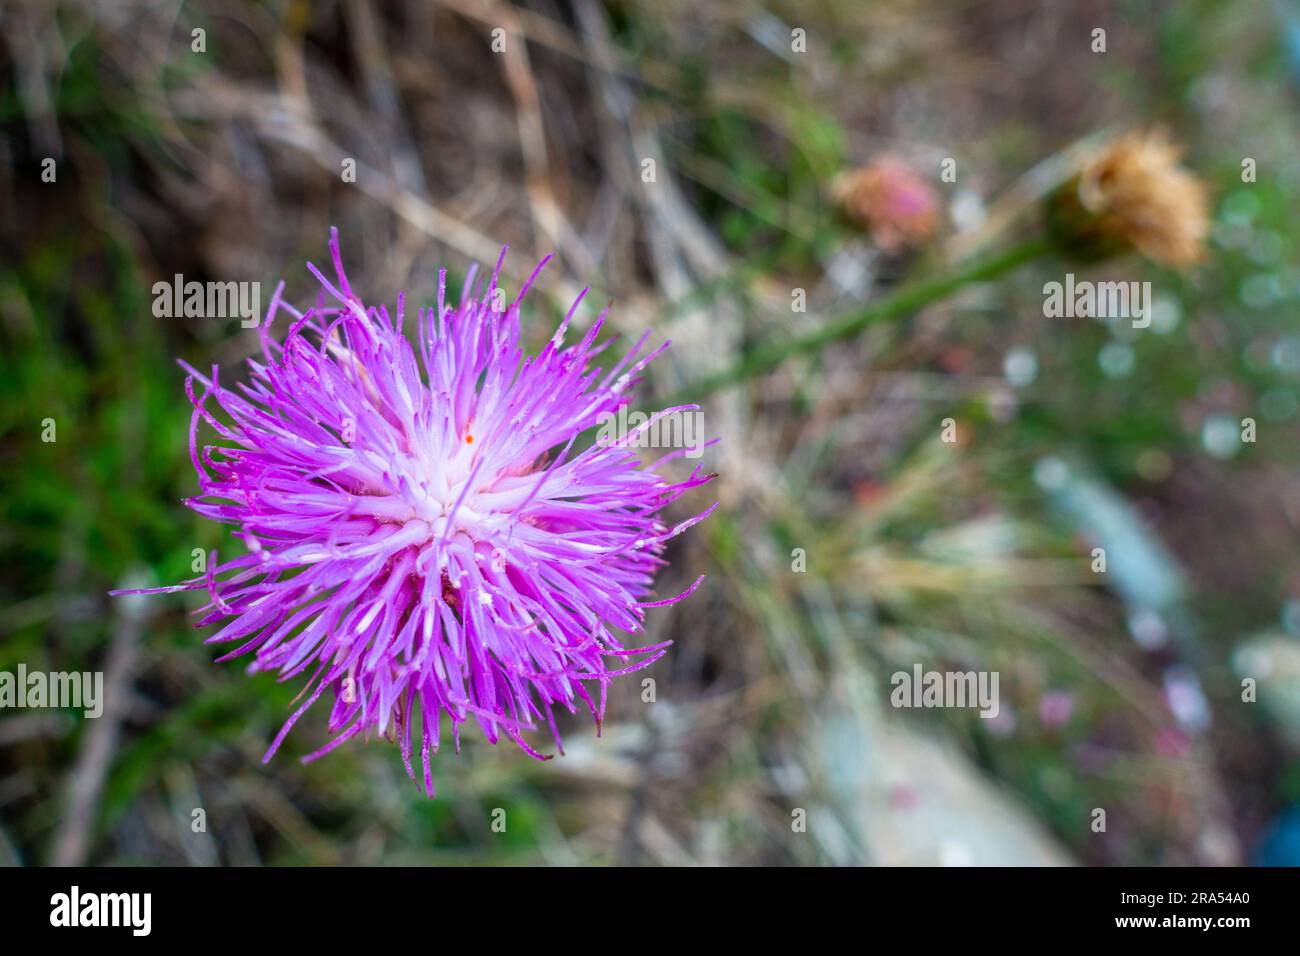 Nahaufnahme des wunderschönen Cheirolophus crassifolius, der maltesischen Centaury-Pflanze mit blühender fellförmiger lilafarbener Blume. Himalaya-Region Utta Stockfoto